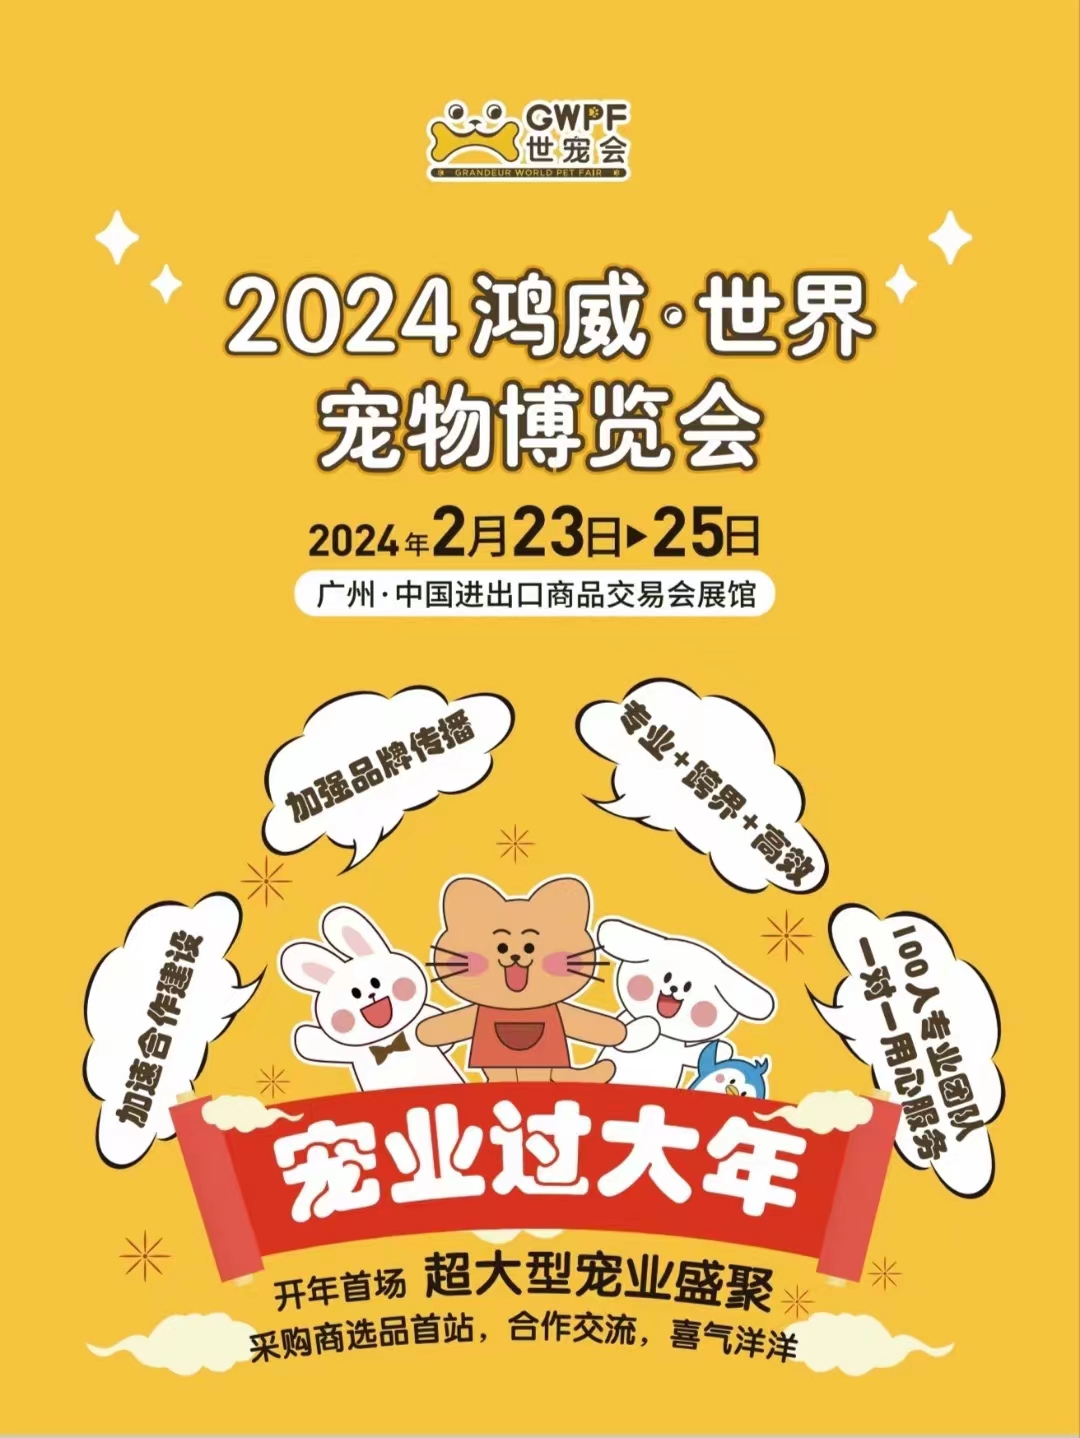 2024开年第一场超大型宠业盛聚！鸿威·世界宠物博览会（GWPF世宠会）重磅升级